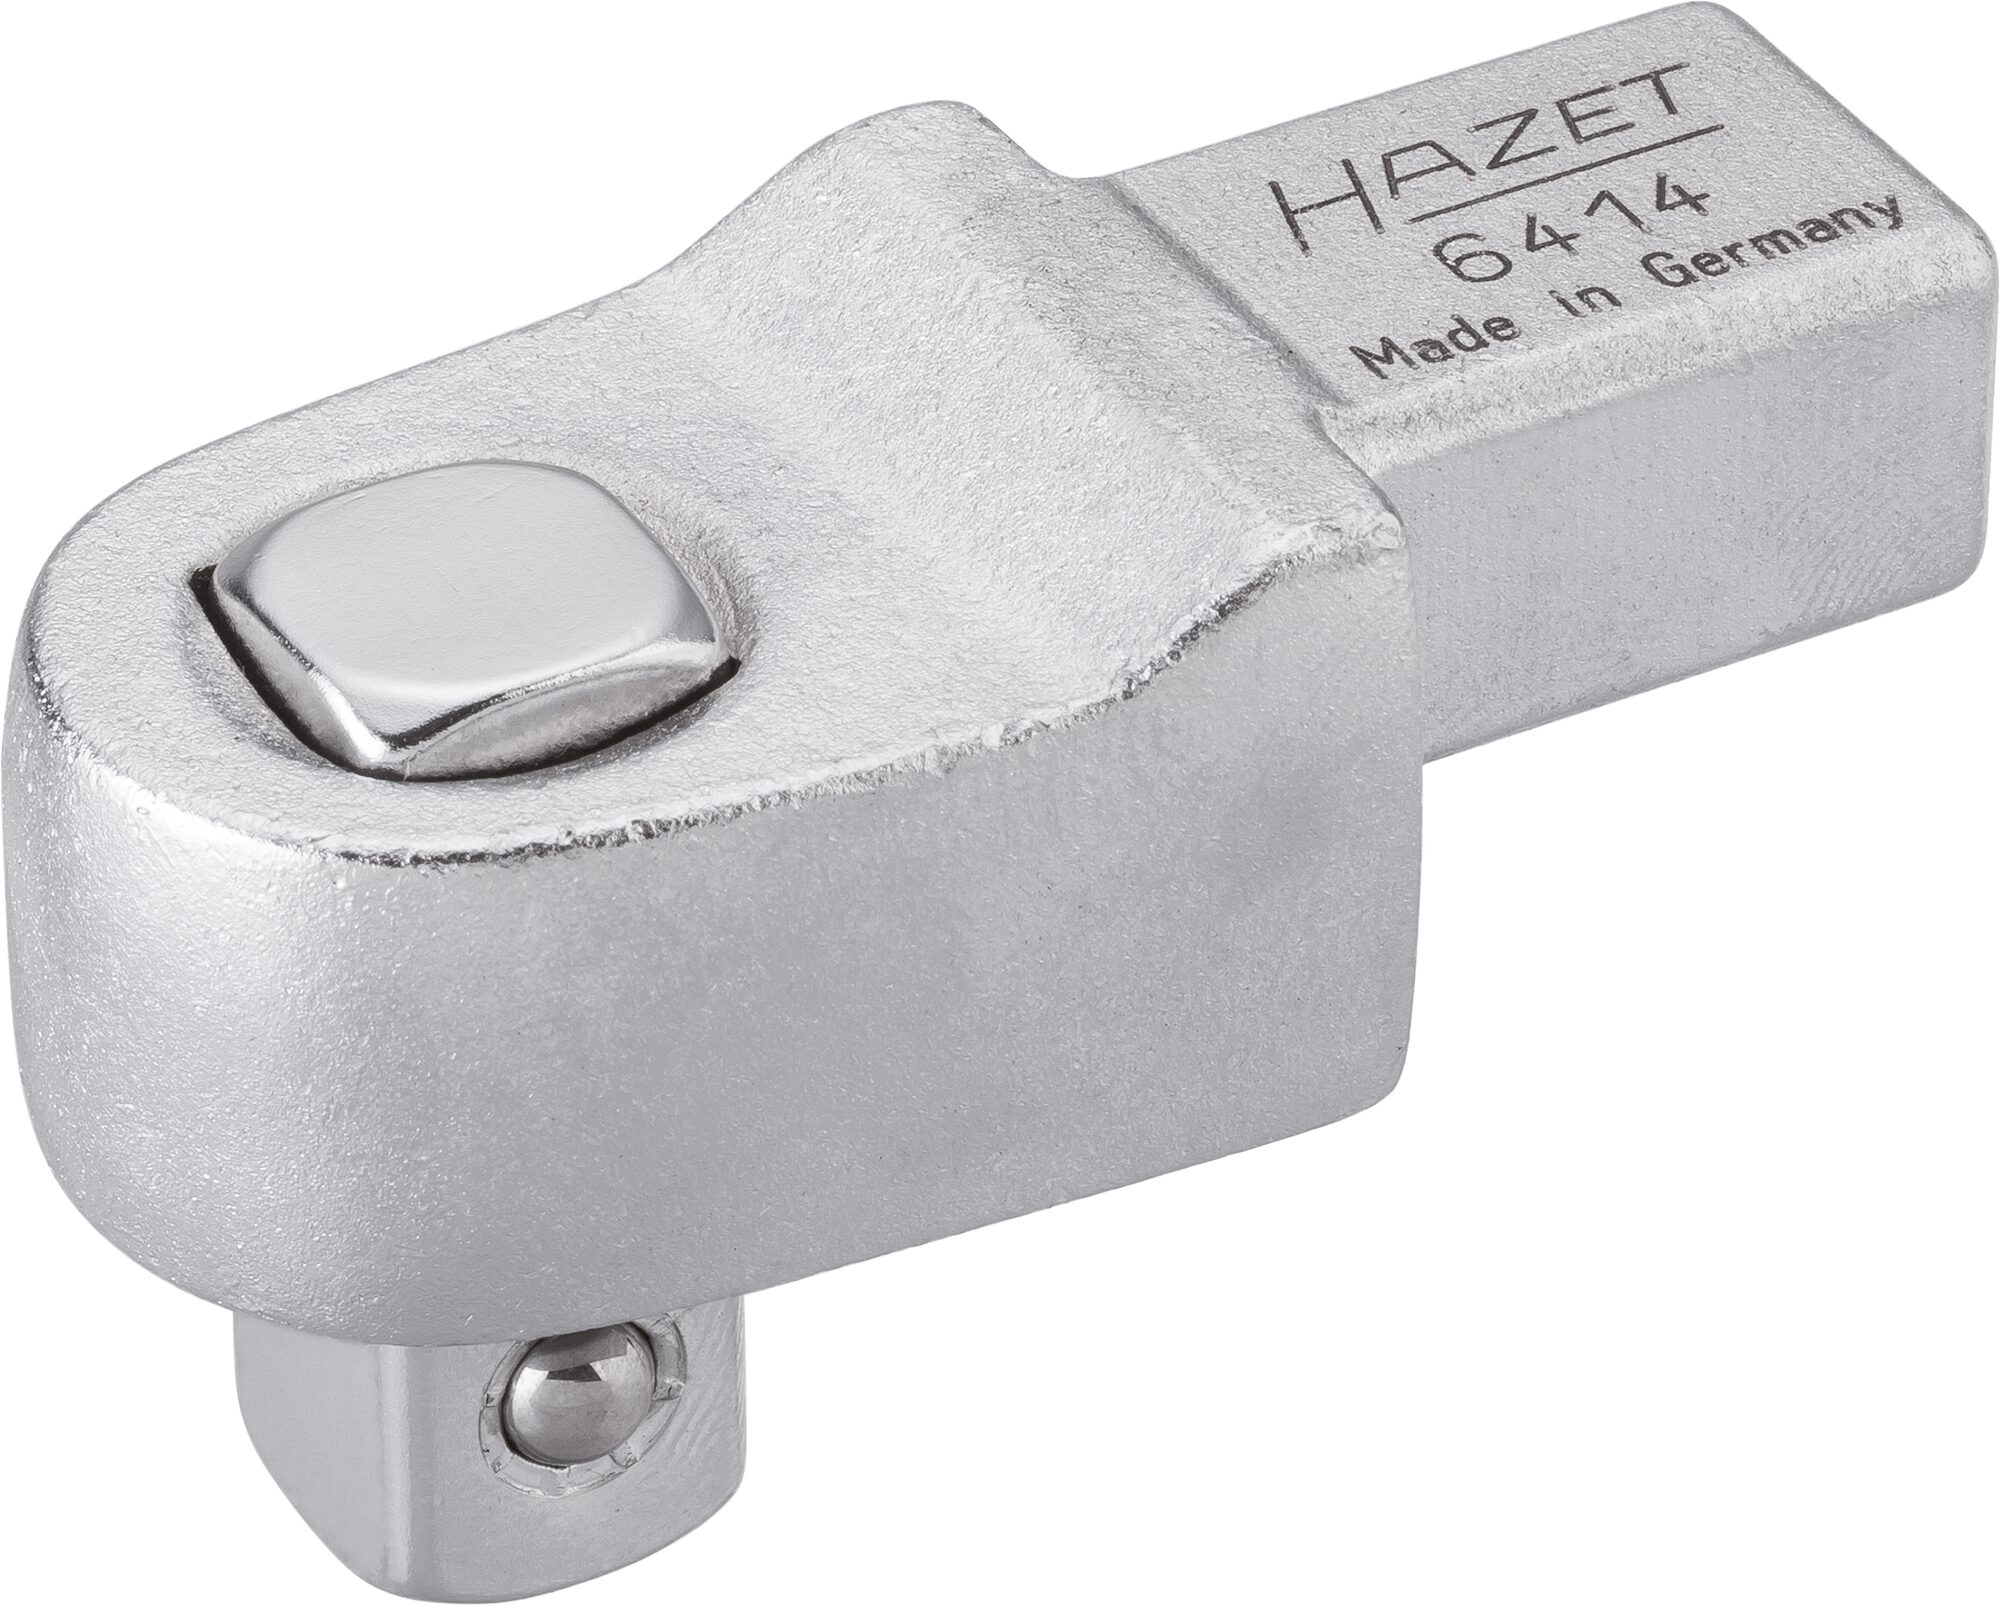 HAZET Einsteck-Vierkant Antriebe 6414 · Einsteck-Vierkant 14 x 18 mm · Vierkant massiv 12,5 mm (1/2 Zoll)